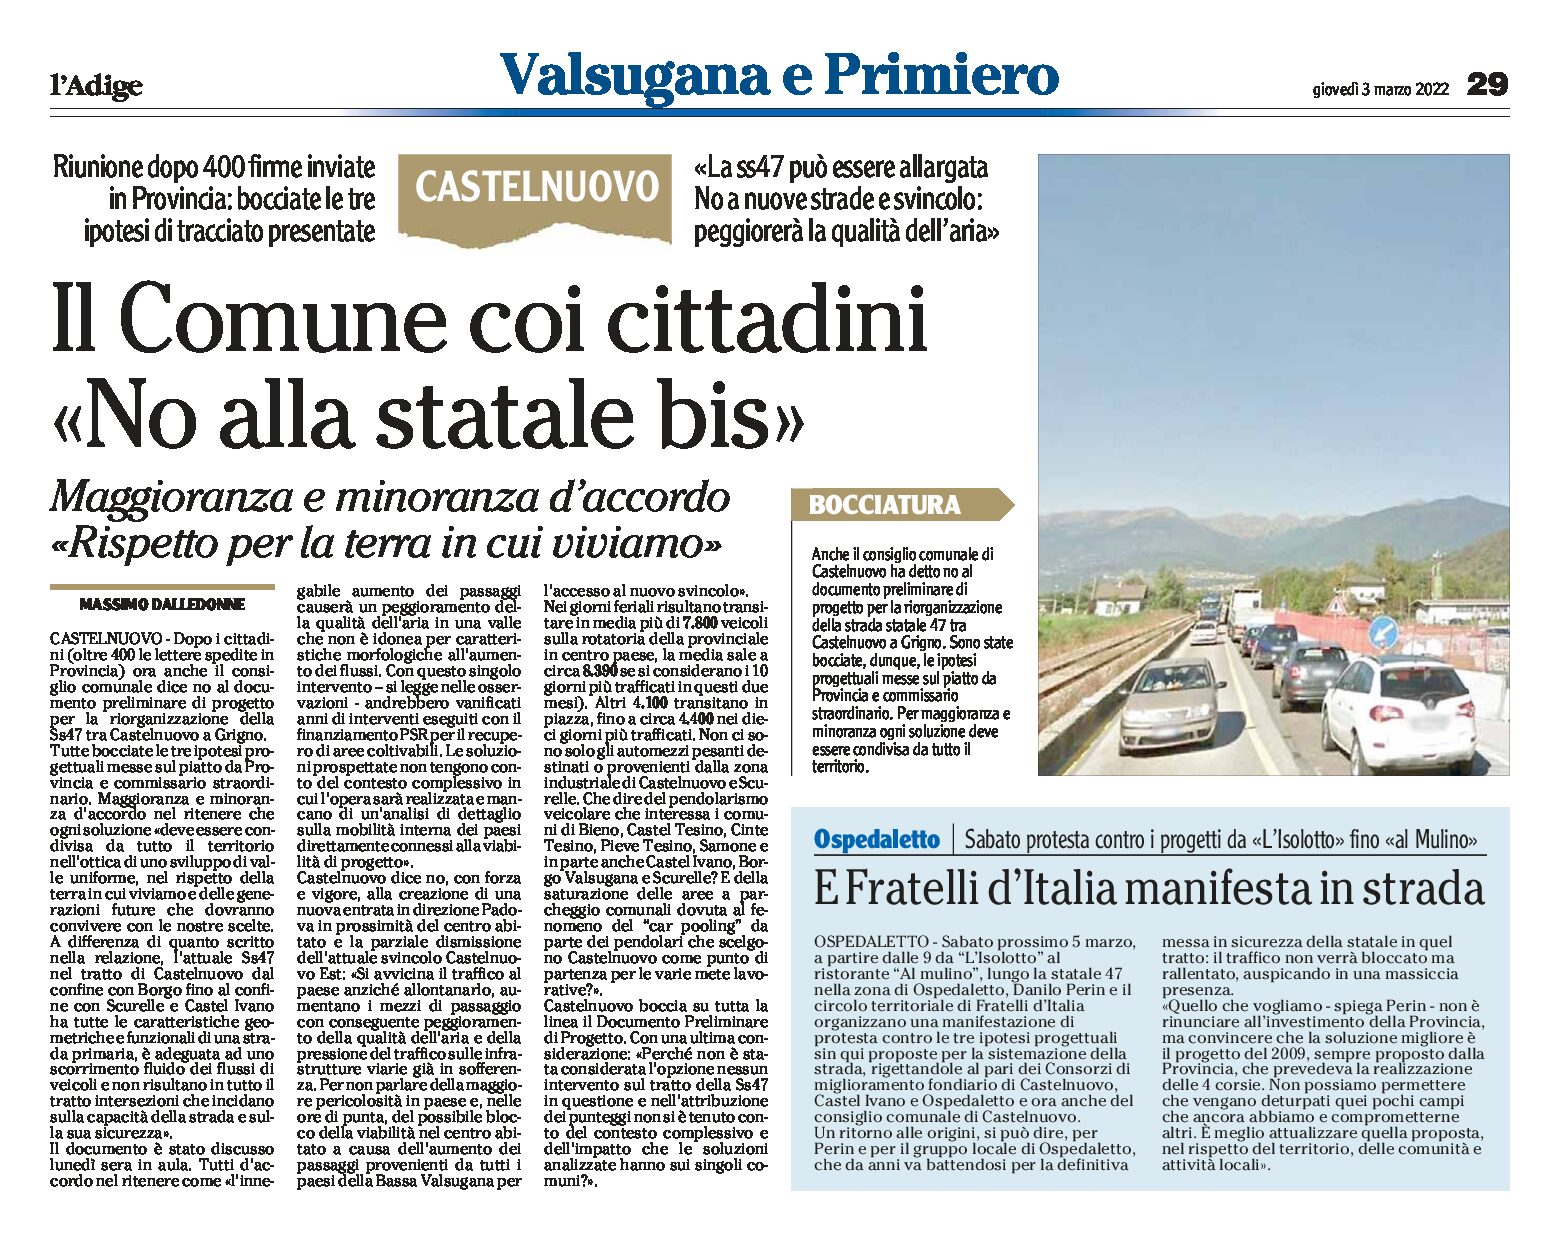 Castelnuovo: il Comune con i cittadini “no alla statale bis”